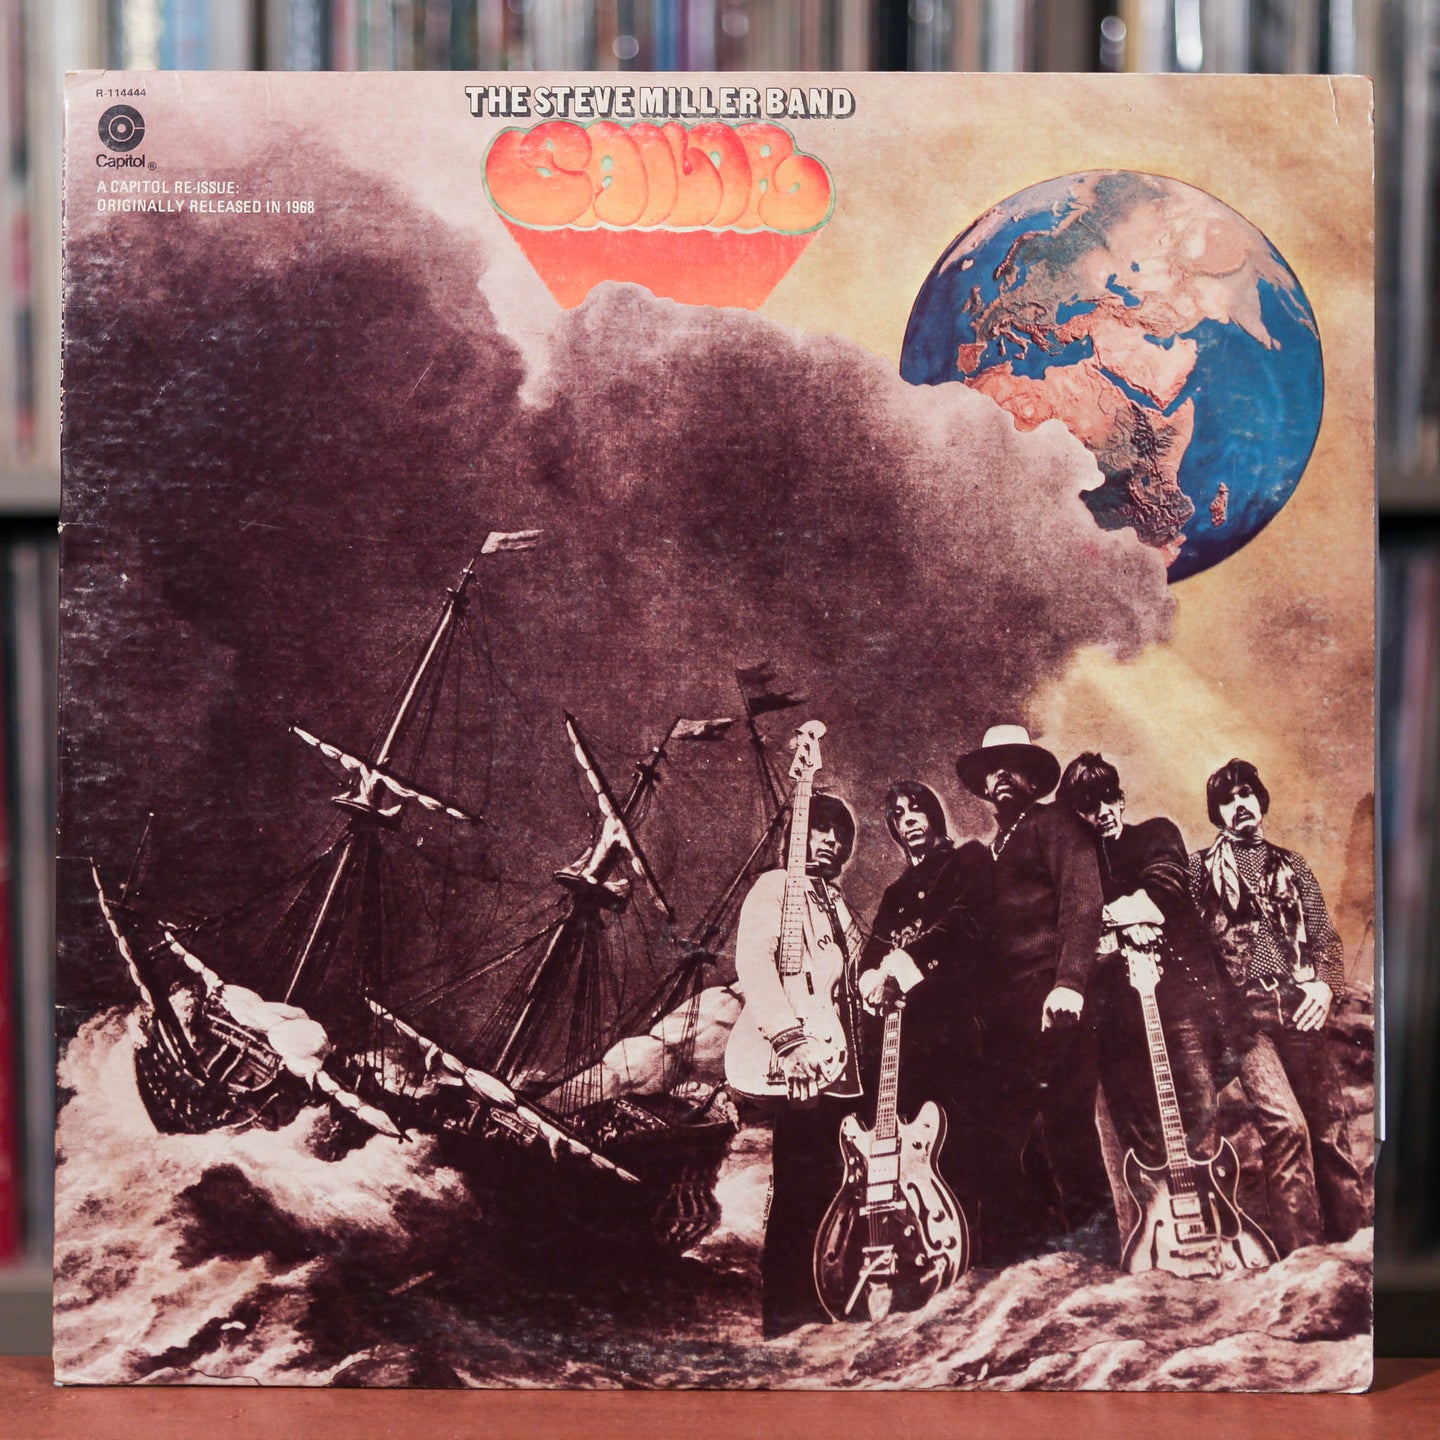 Steve Miller Band - Sailor - 1972 Capitol - VG/VG